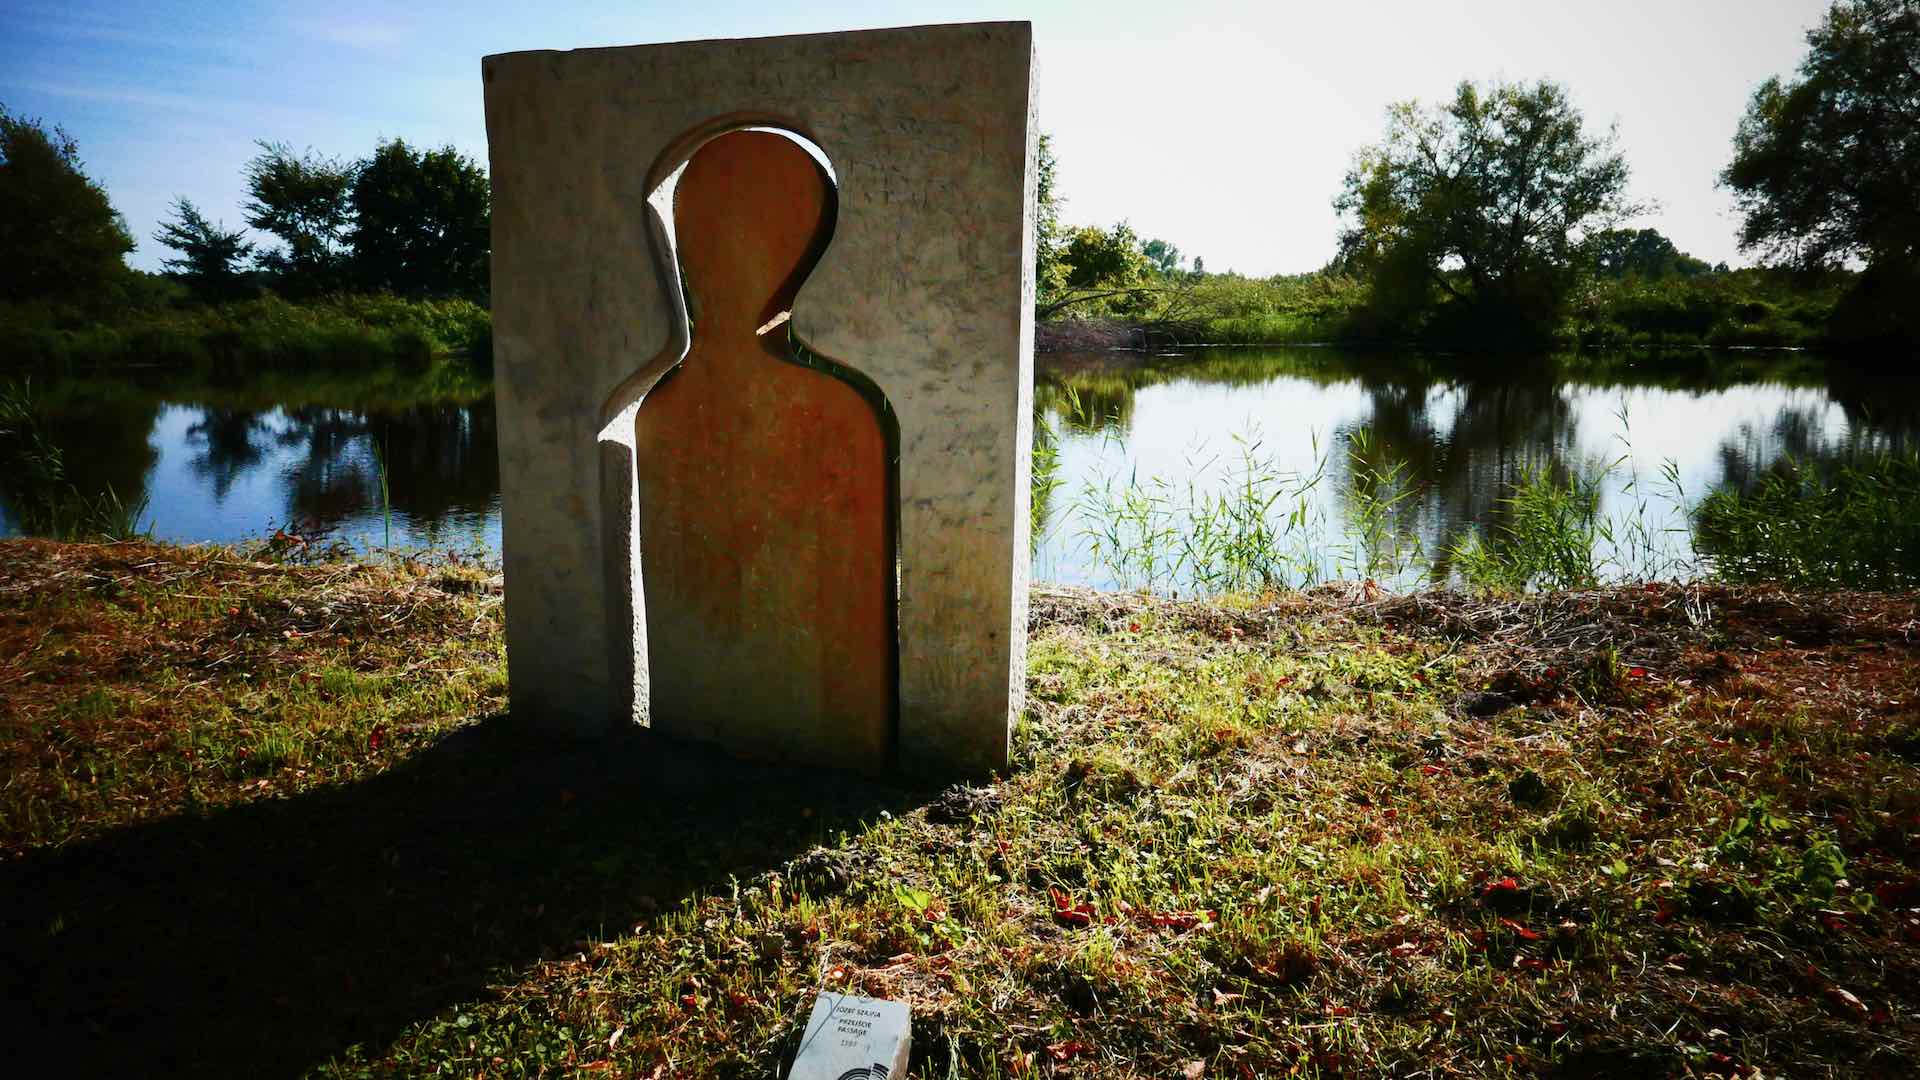 orońsko contemporary sculpture garden